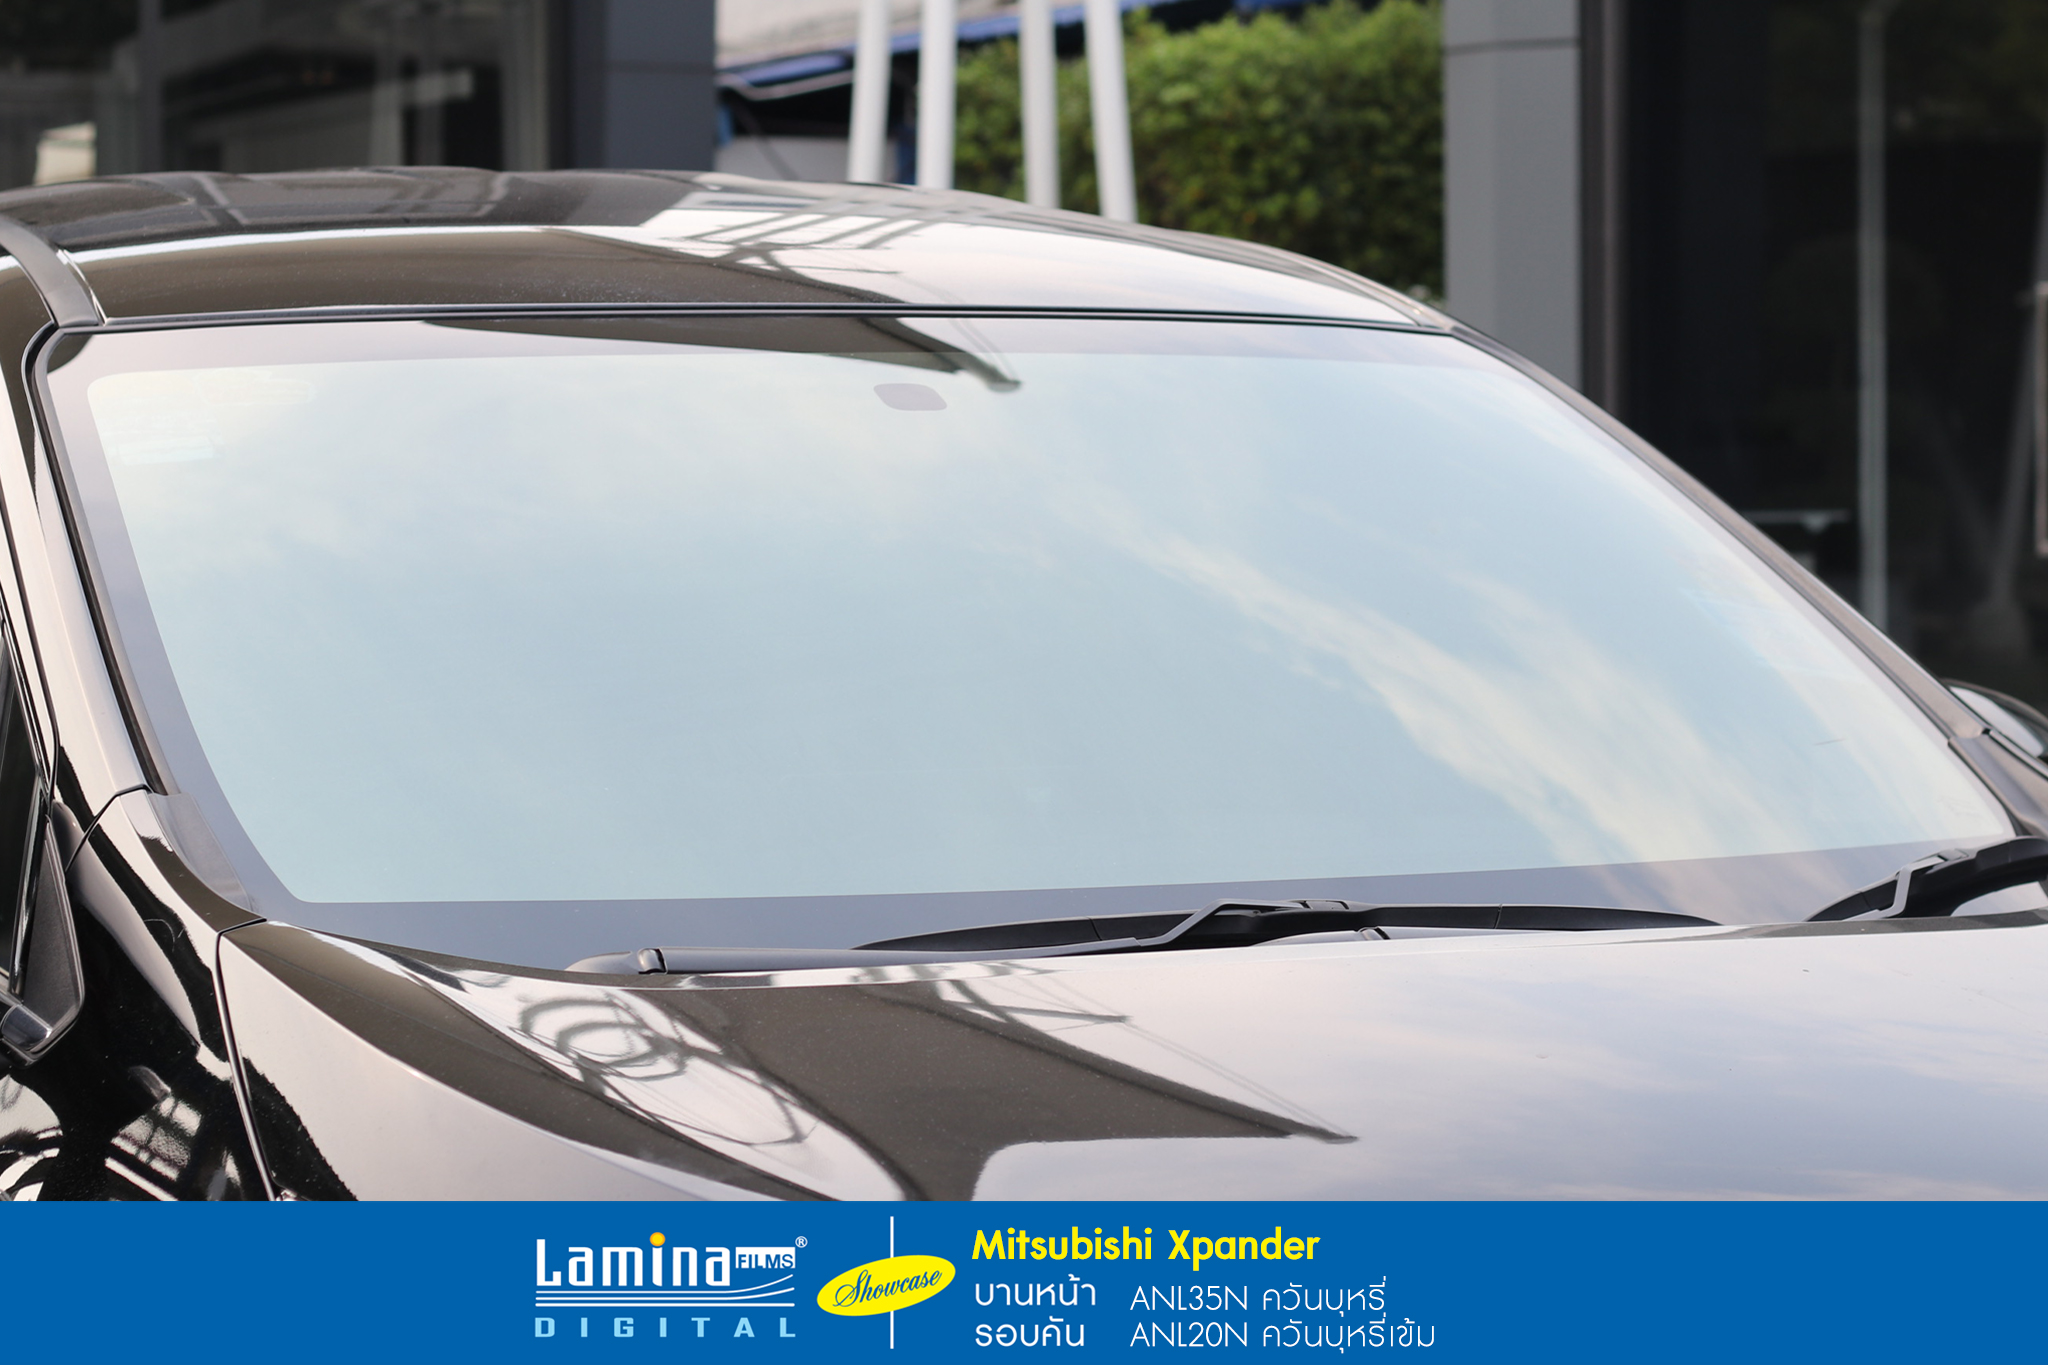 ฟิล์มปรอท lamina genius series Mitsubishi Xpander 2